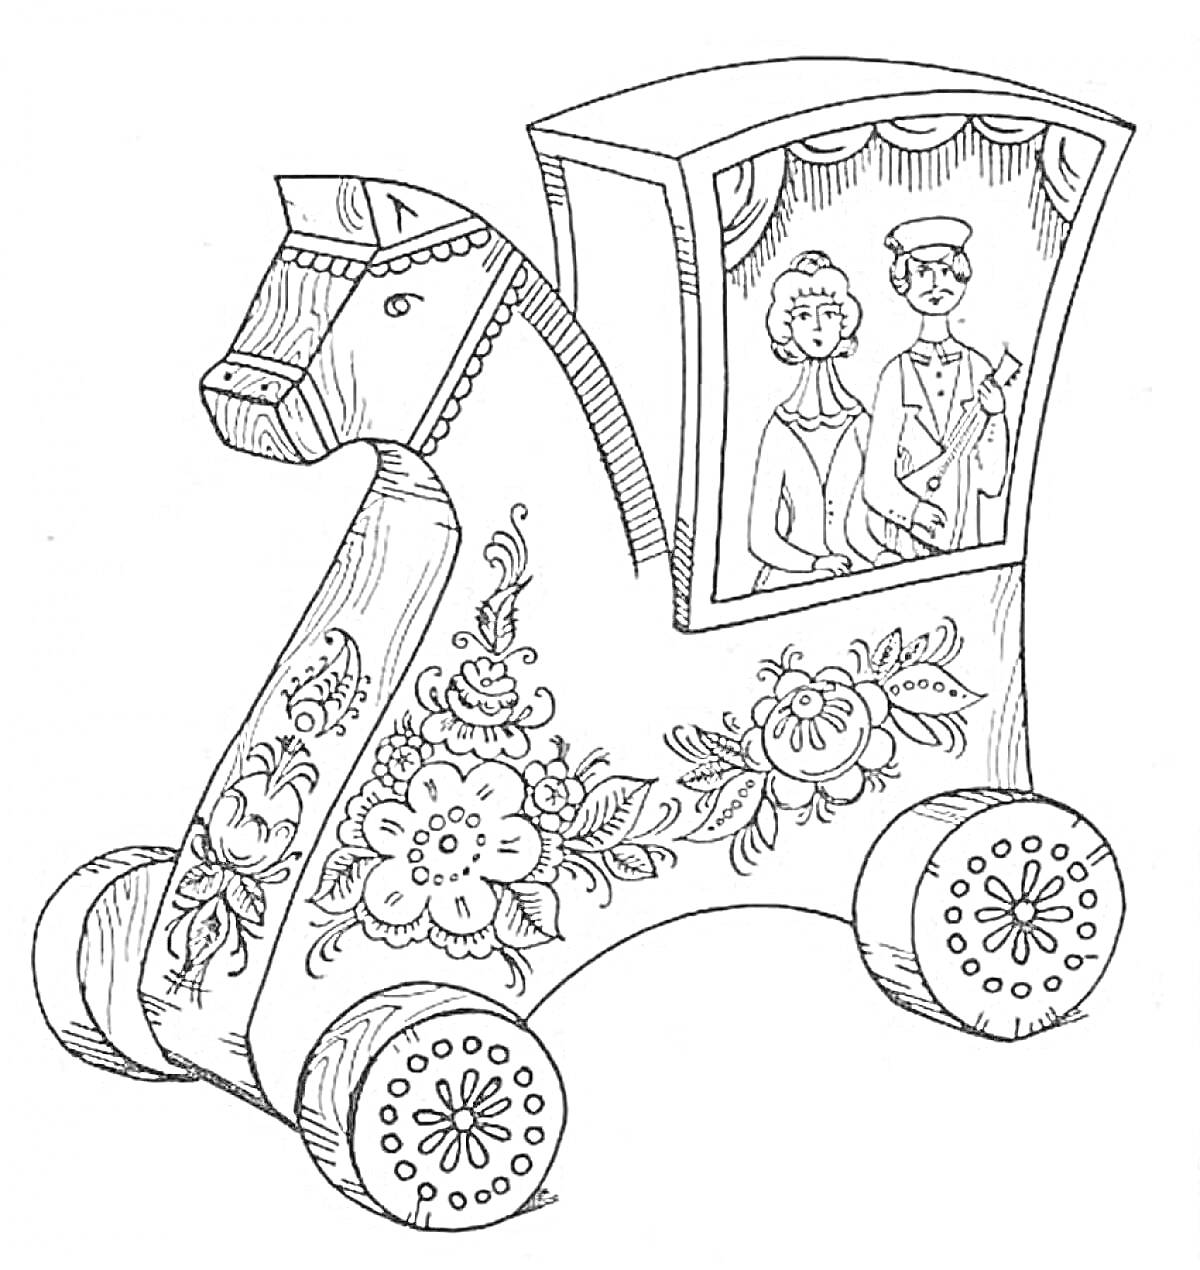 Раскраска Лошадка-каталка с двумя людьми в кабинке и цветочным узором